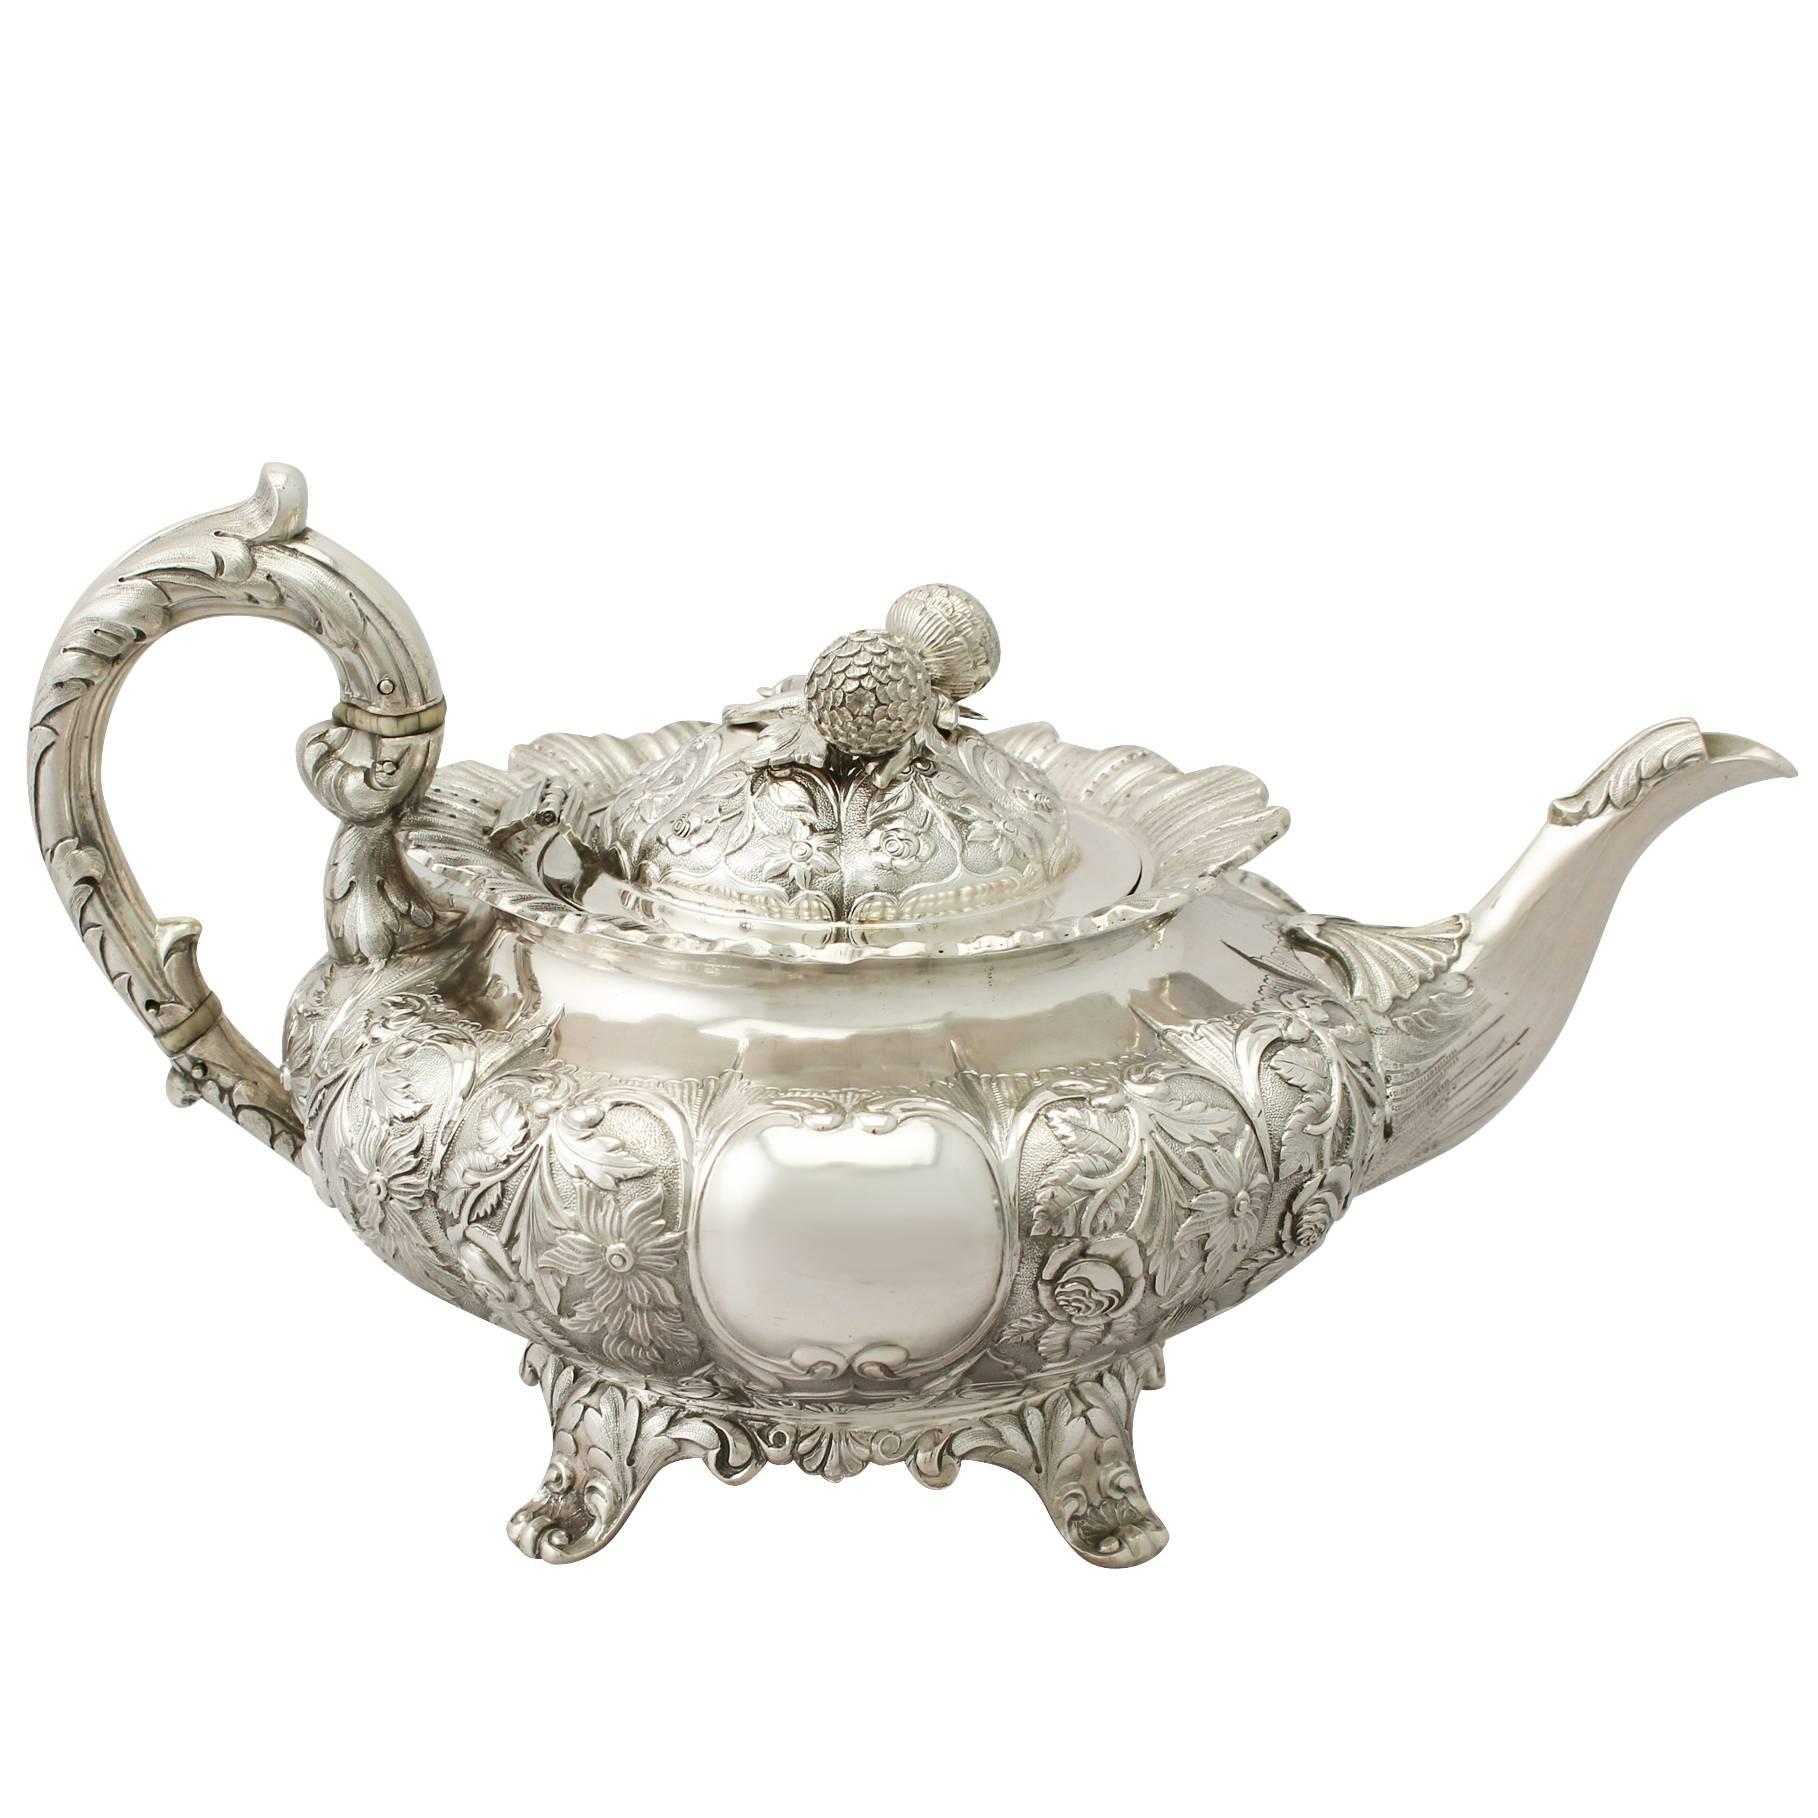 Indian Colonial Silver Teapot, Antique, circa 1850